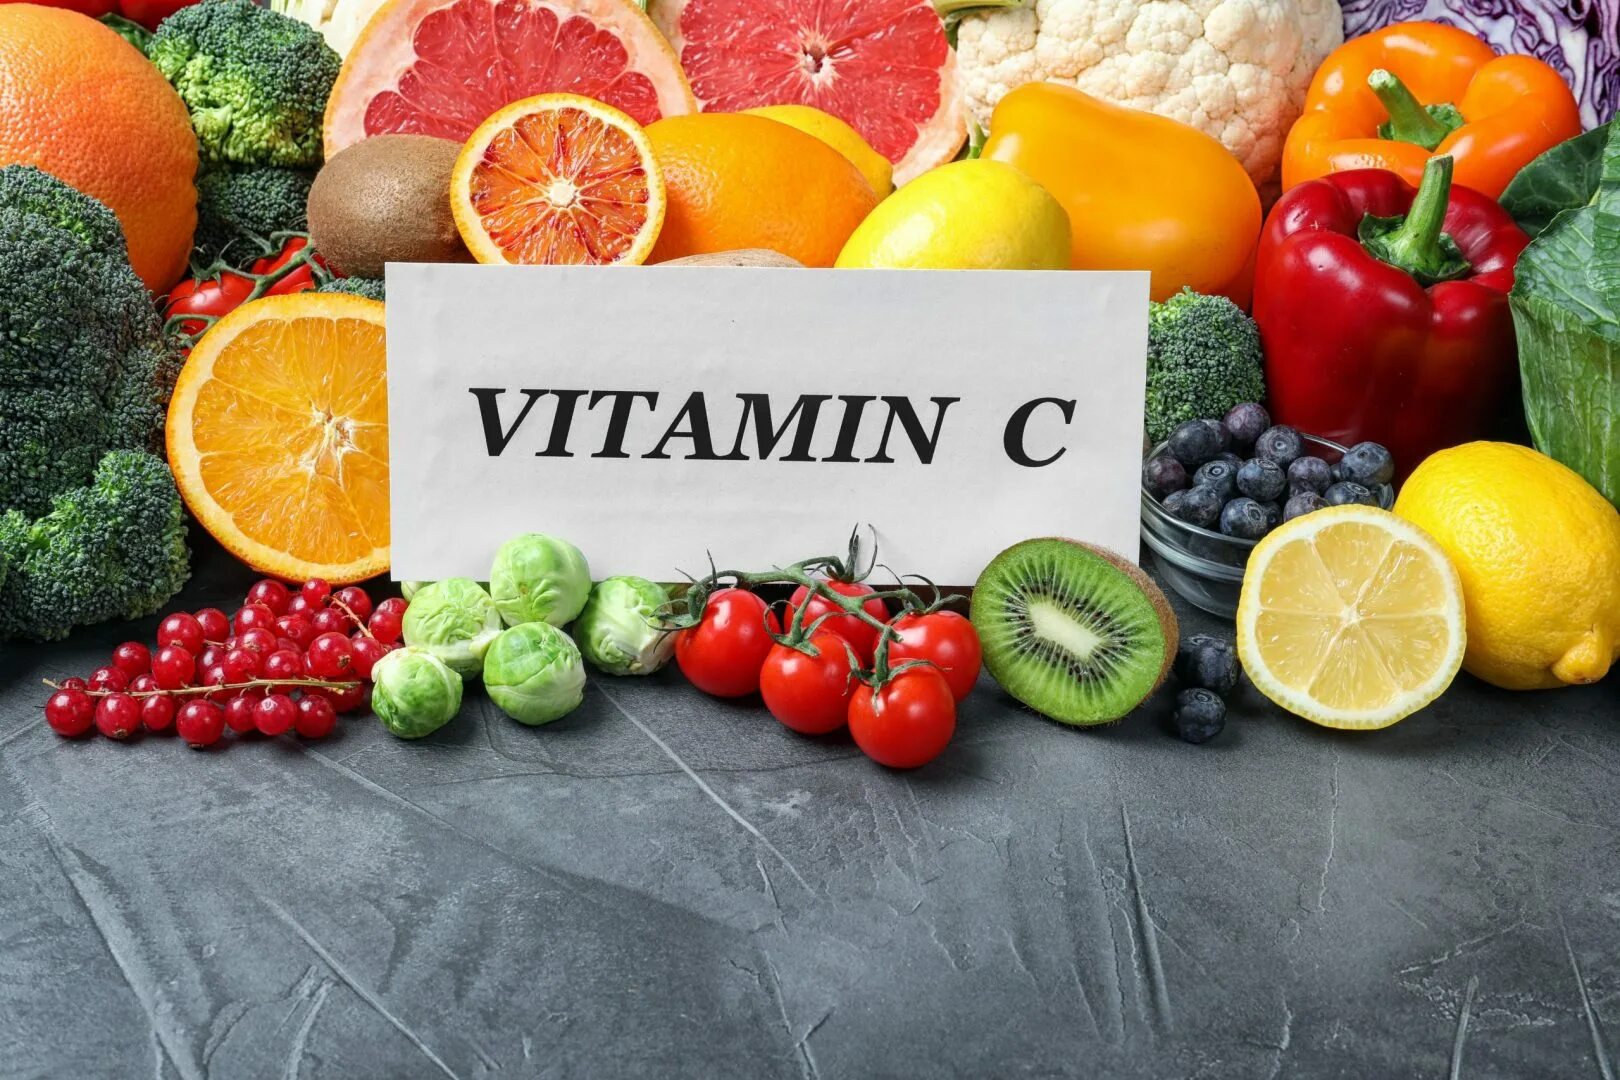 Vit c 5. Что такое витамины. Витамин c. Витамины картинки. Факты о витаминах.